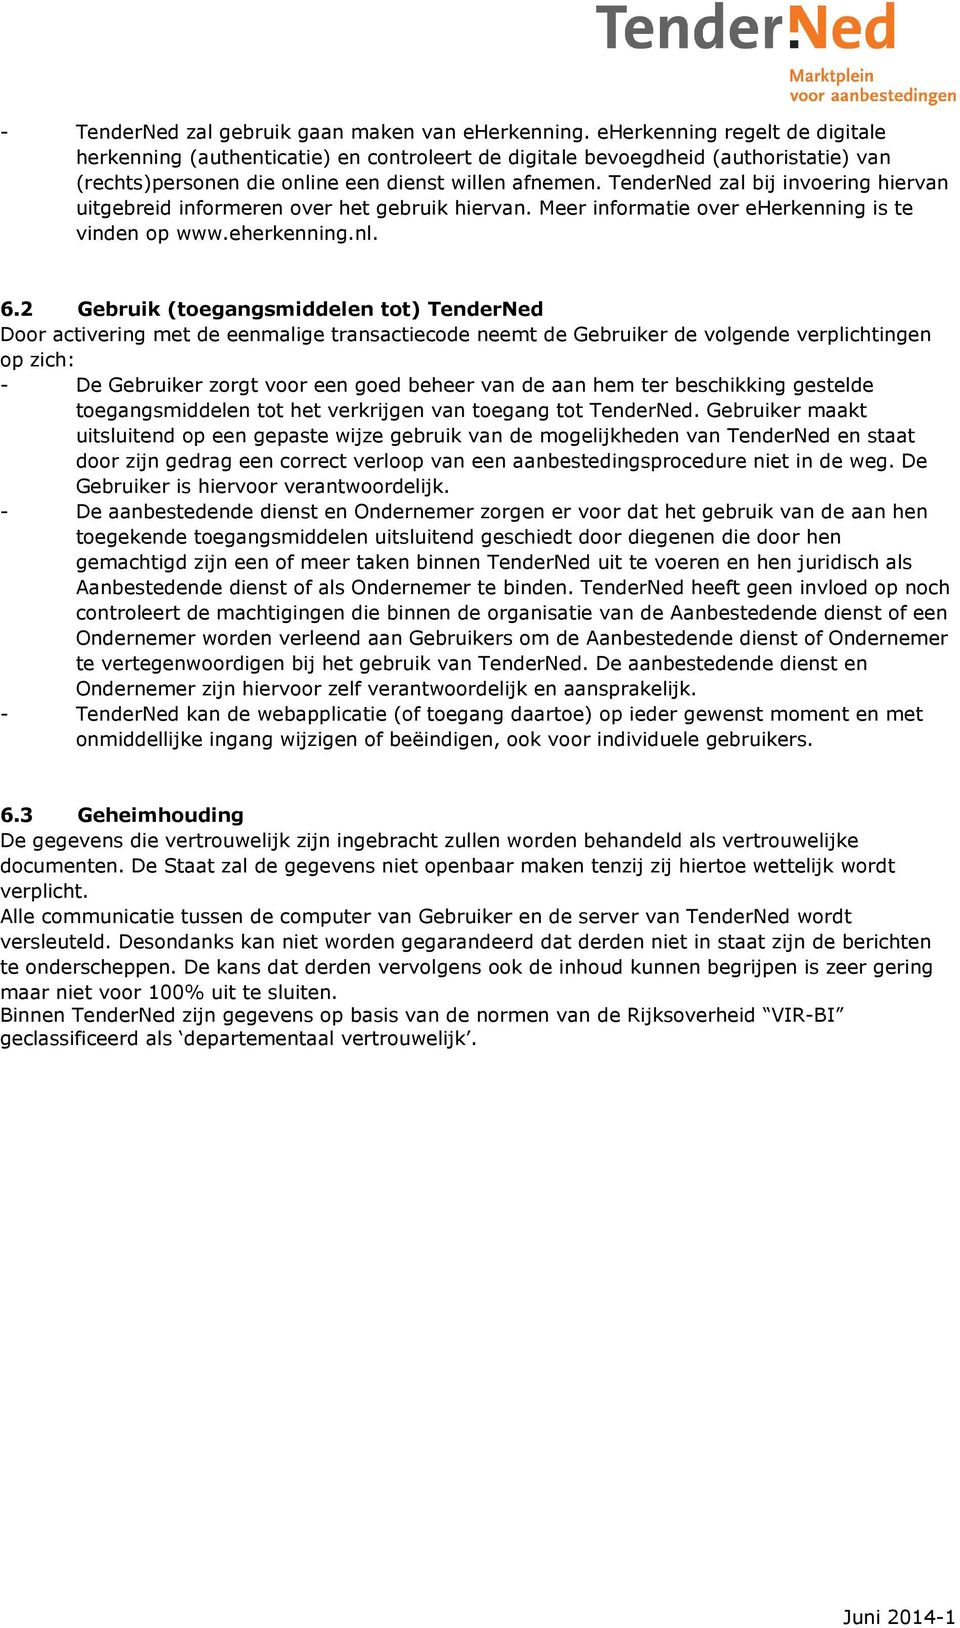 TenderNed zal bij invoering hiervan uitgebreid informeren over het gebruik hiervan. Meer informatie over eherkenning is te vinden op www.eherkenning.nl. 6.